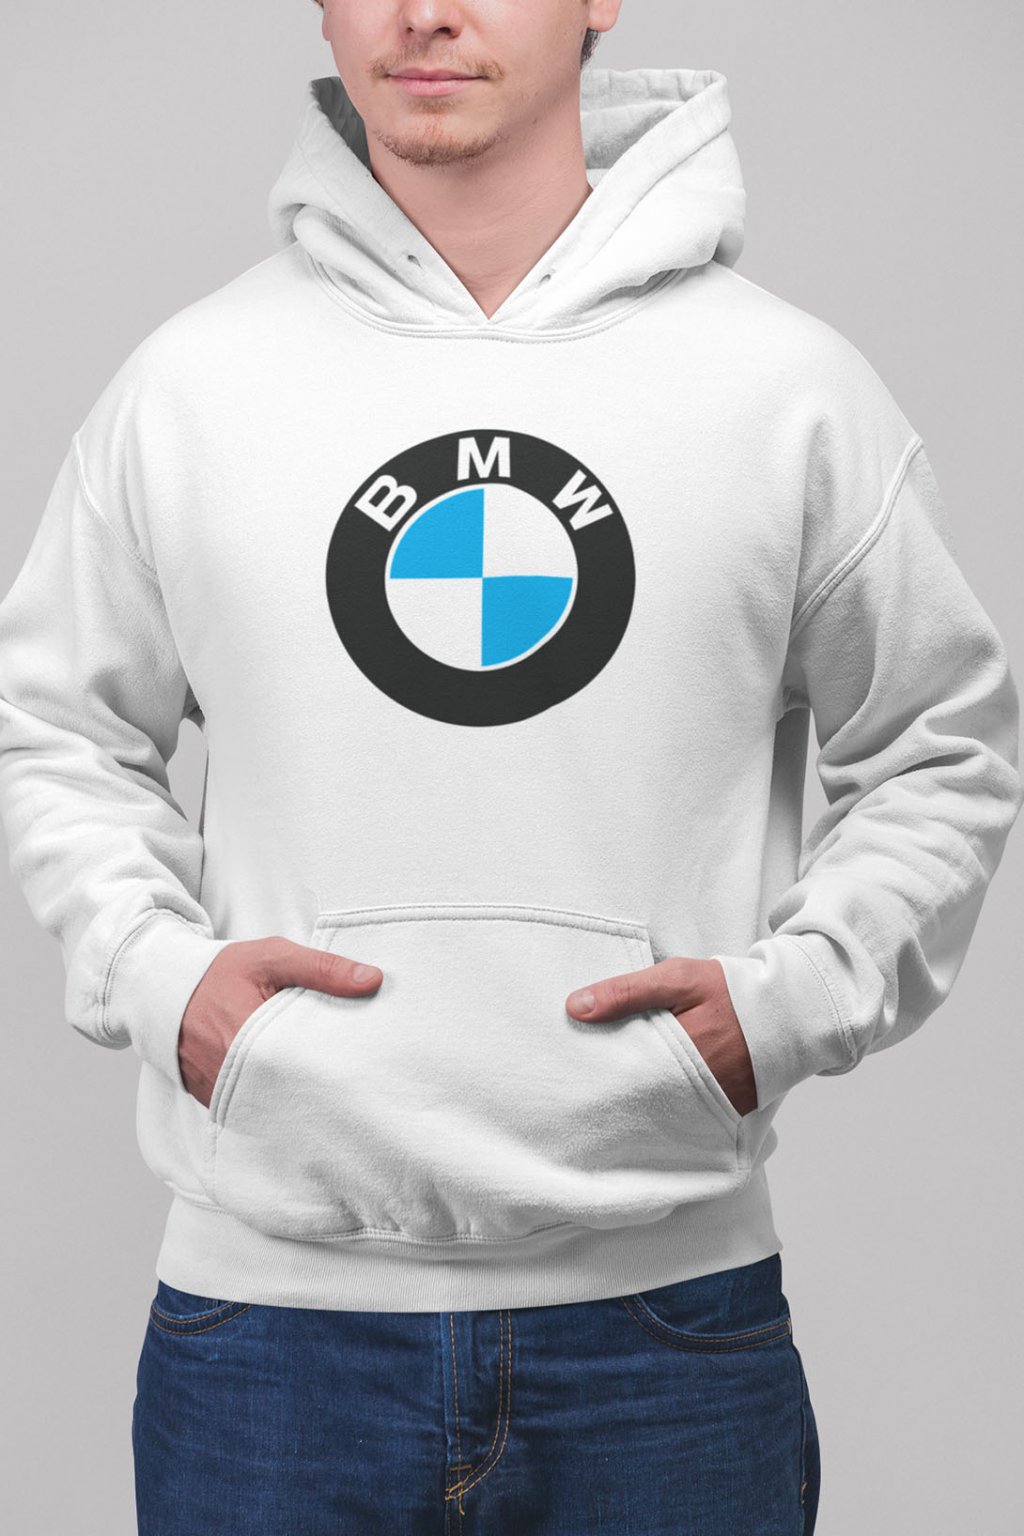 Pánska mikina s logom auta BMW | SuperPotlač.sk